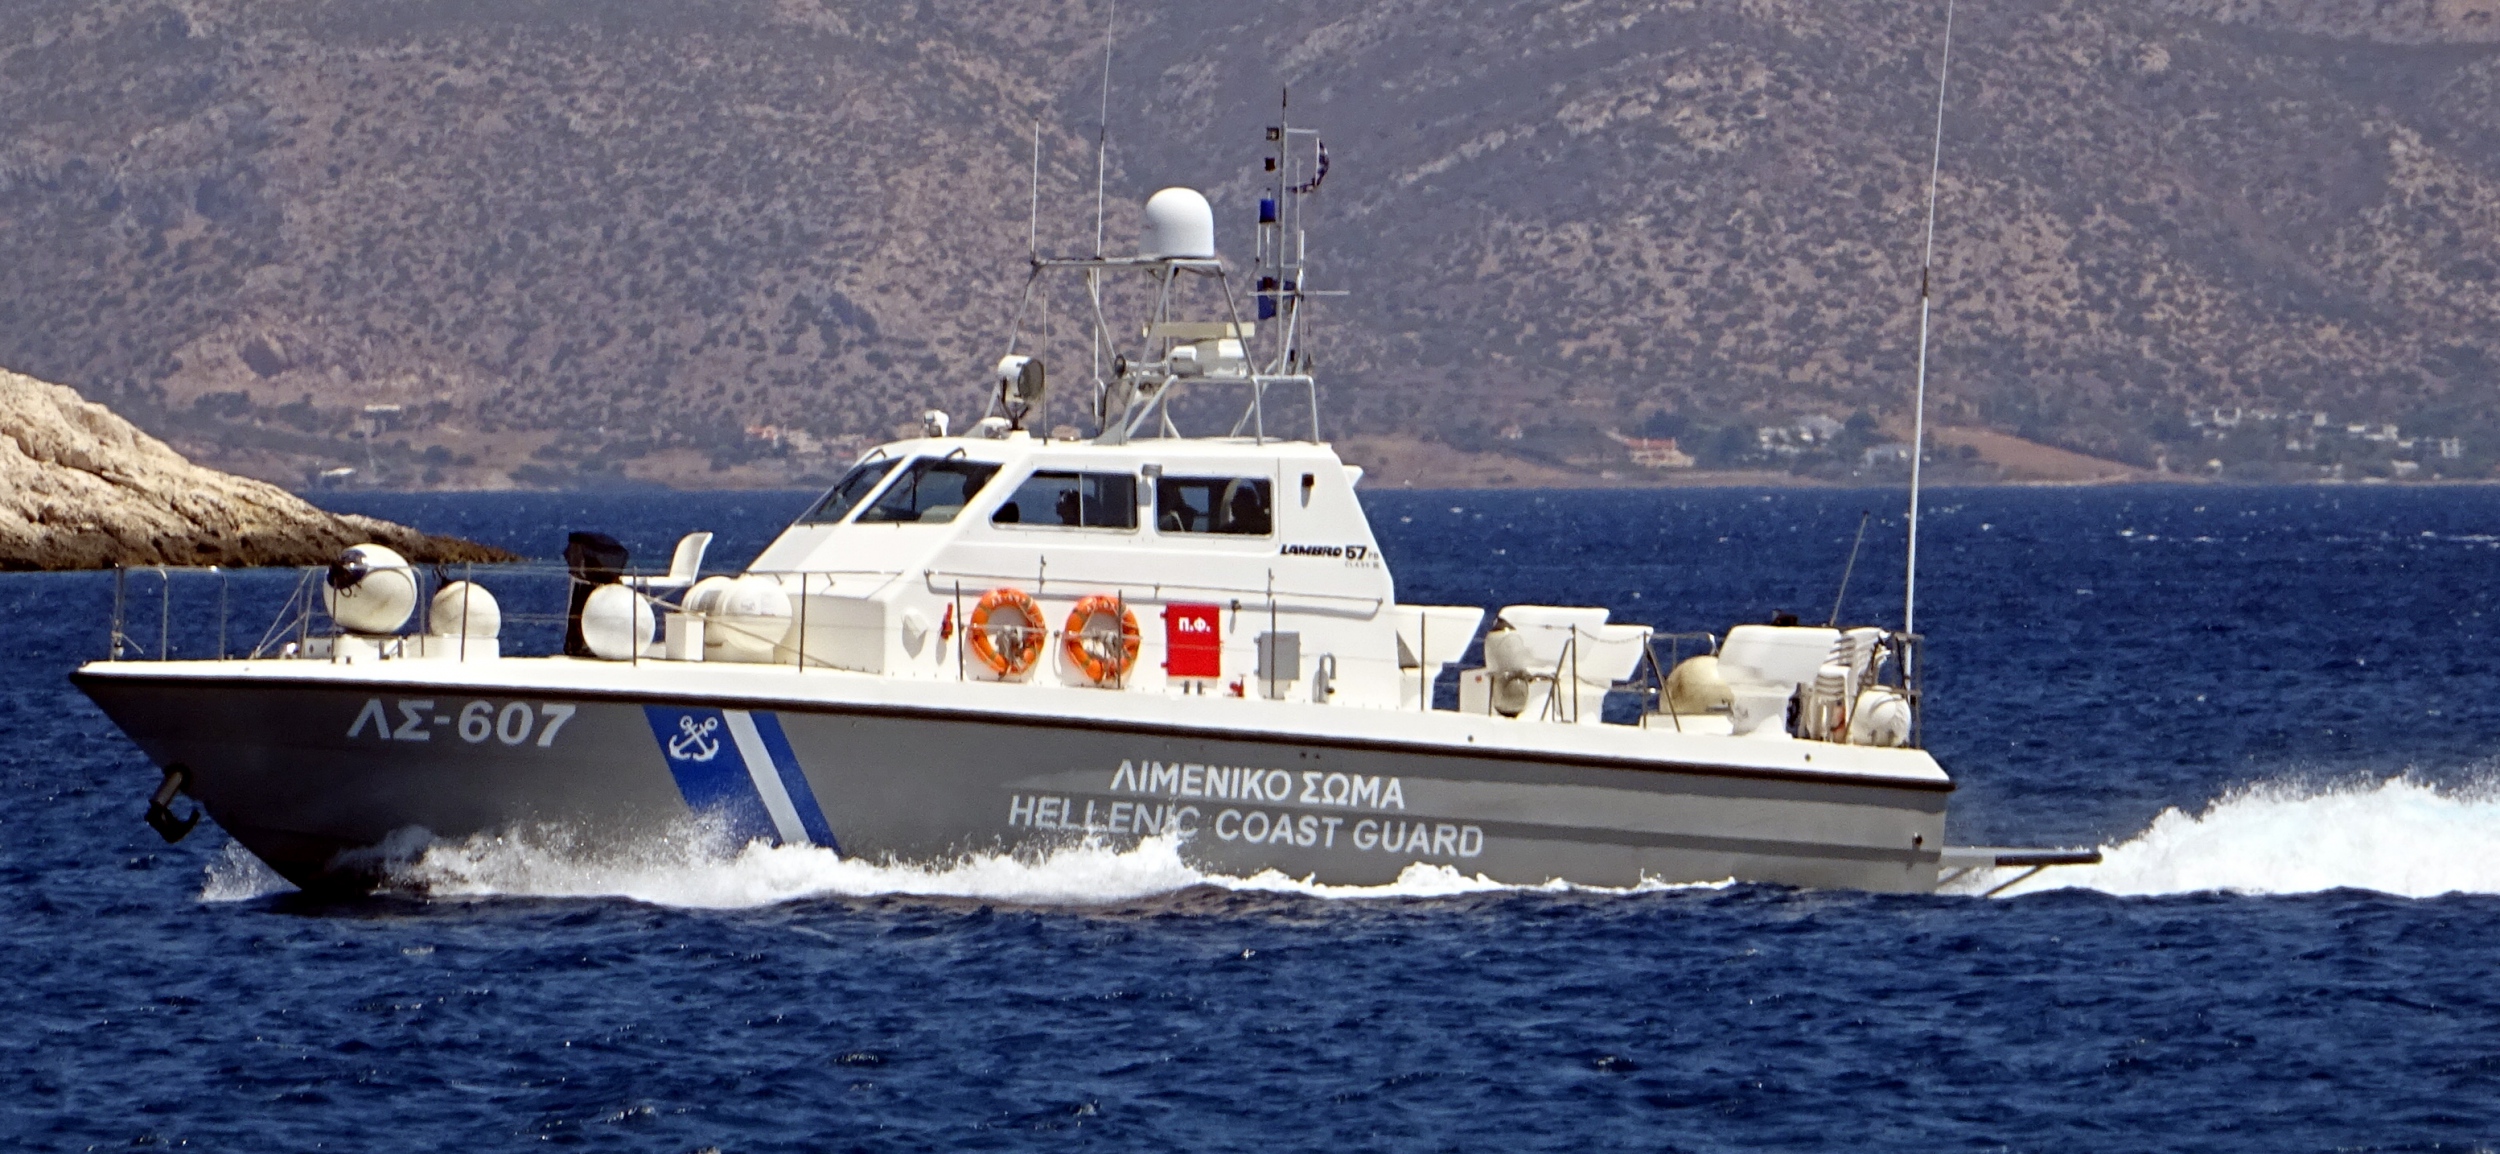 Τουρκική πρόκληση εντός των ελληνικών υδάτων: Τούρκοι προσπάθησαν να εμβολίσουν σκάφος του Λ.Σ στο Καστελόριζο